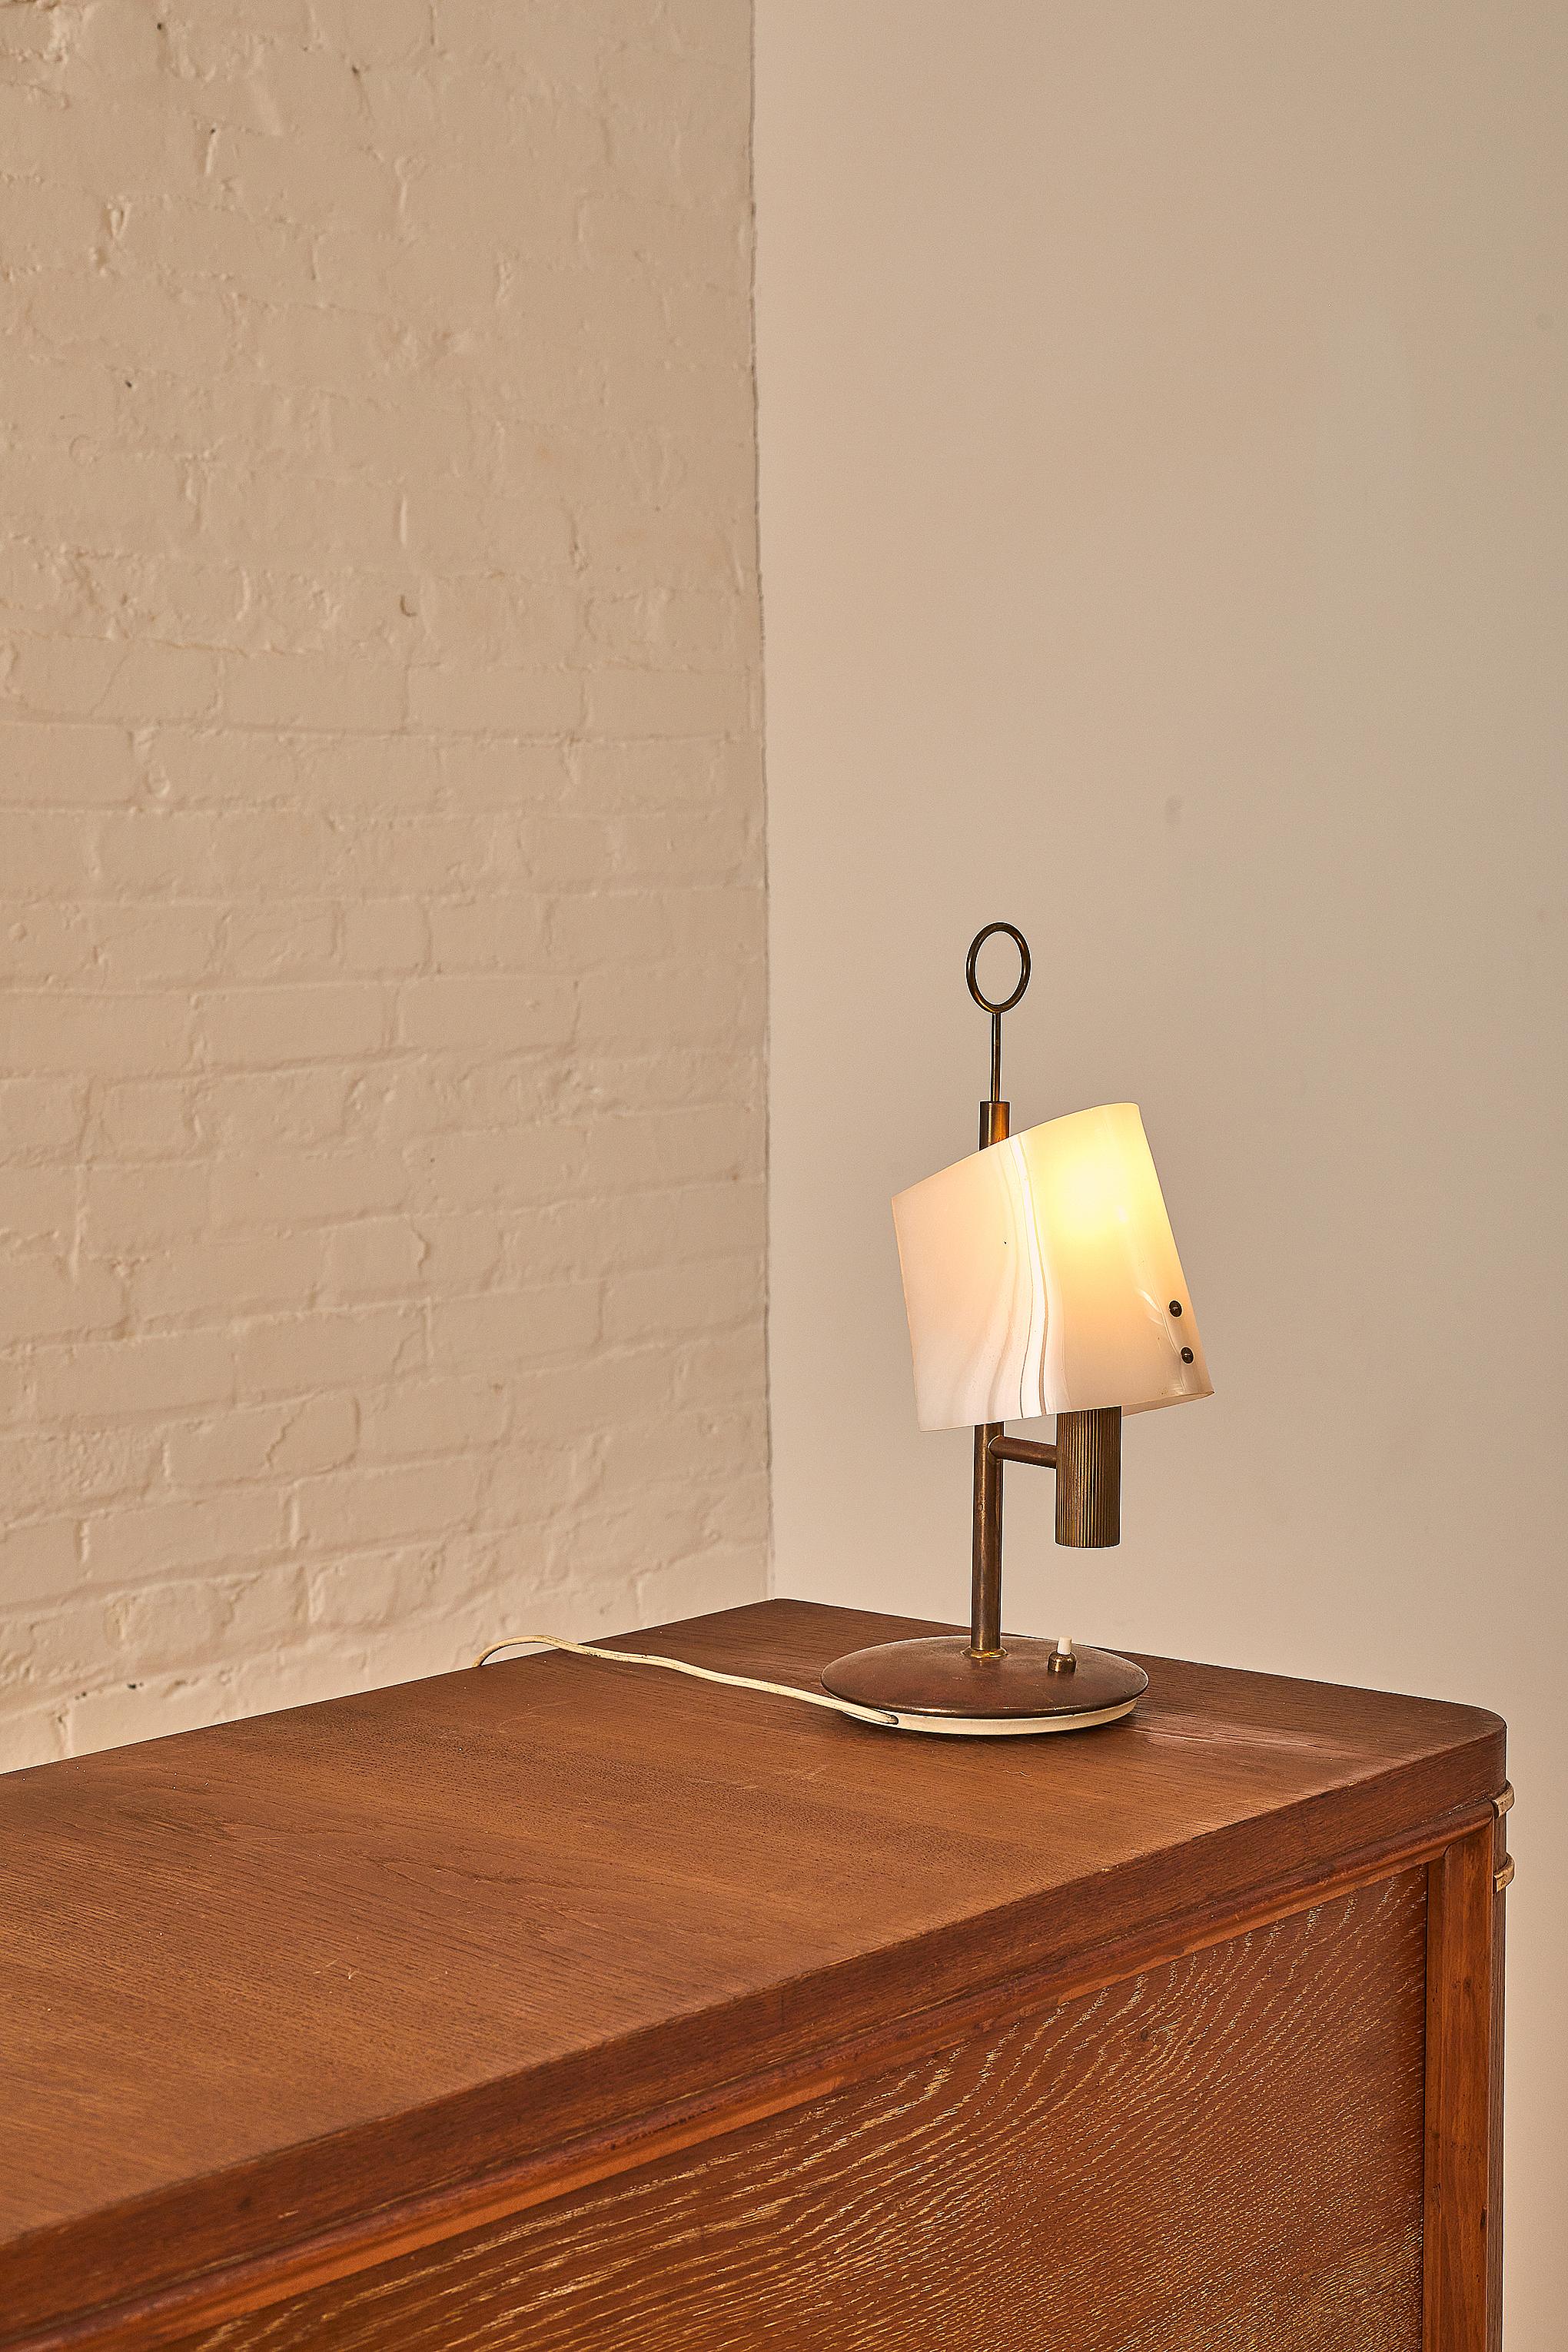 Italian table lamp by Arredoluce with an acrylic shade.

